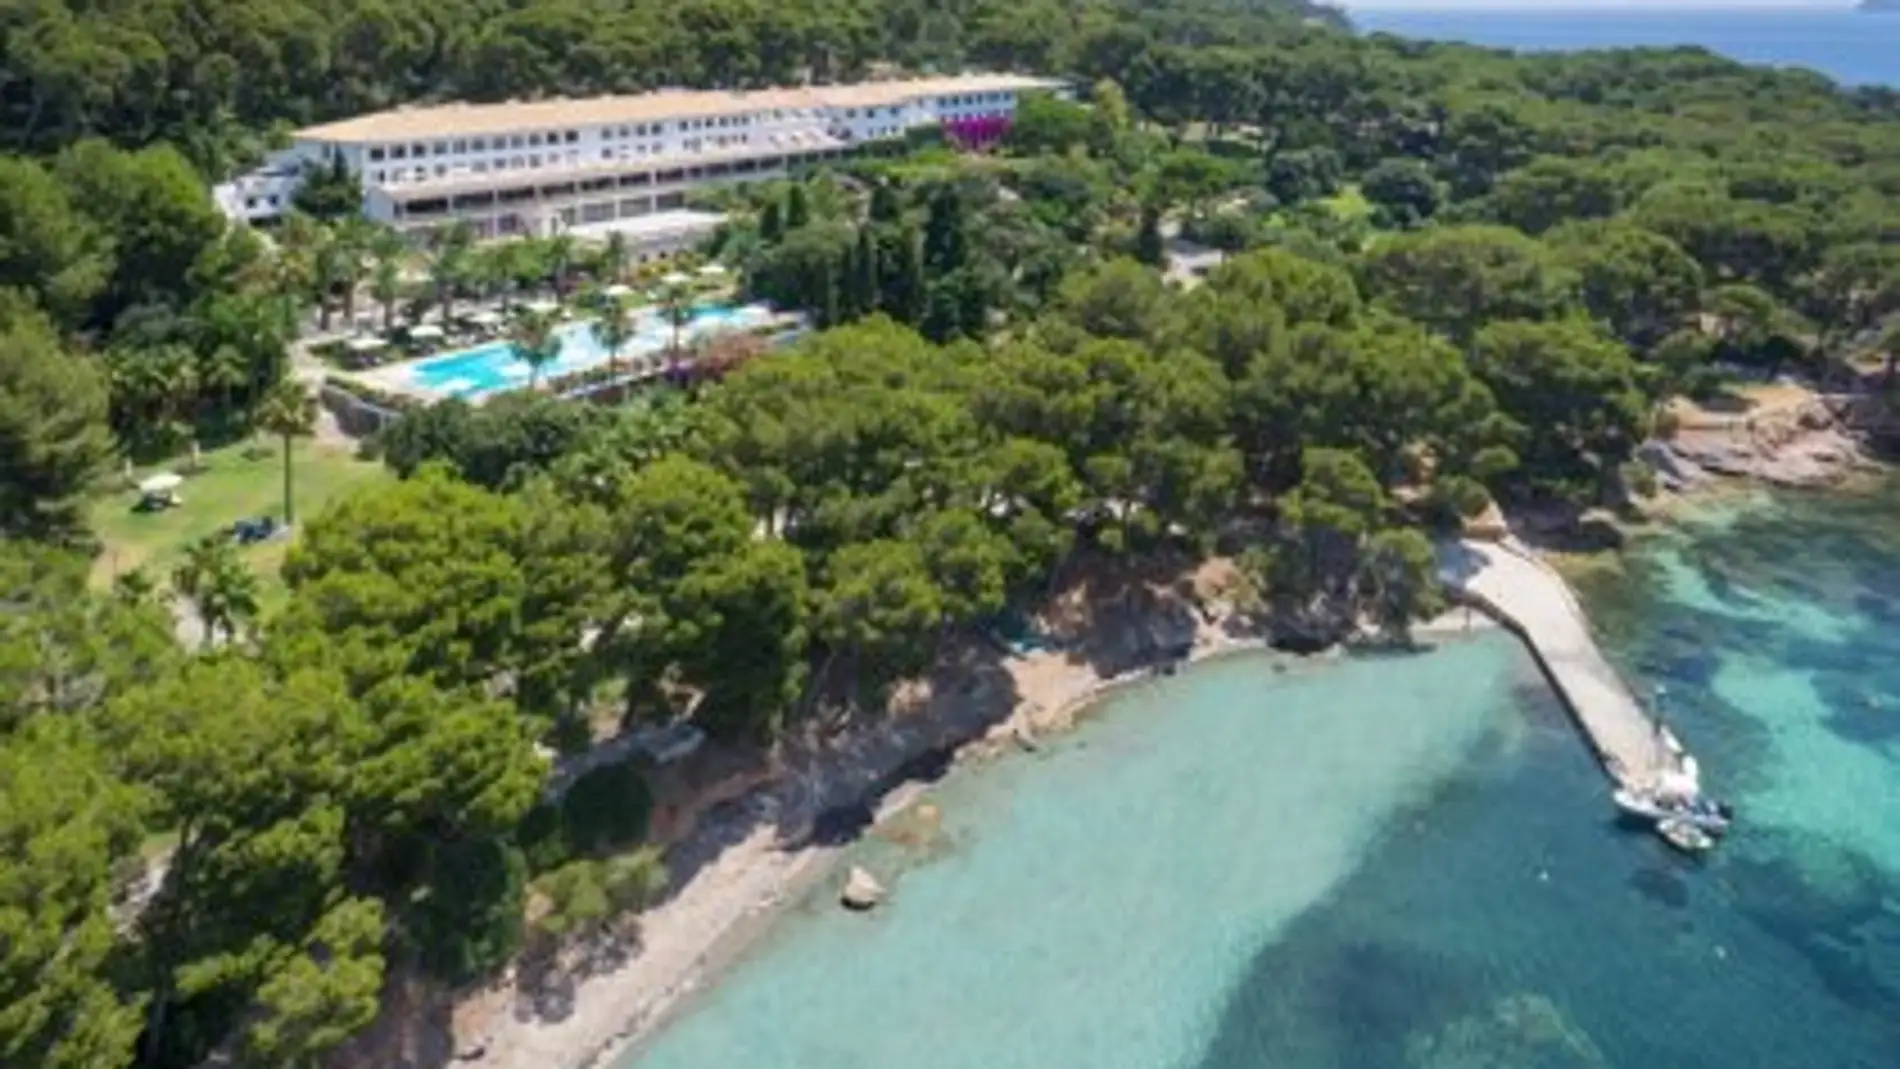 La propiedad del Hotel Formentor sostiene que todos los trabajos son legales y muestra "desconcierto" por la polémica